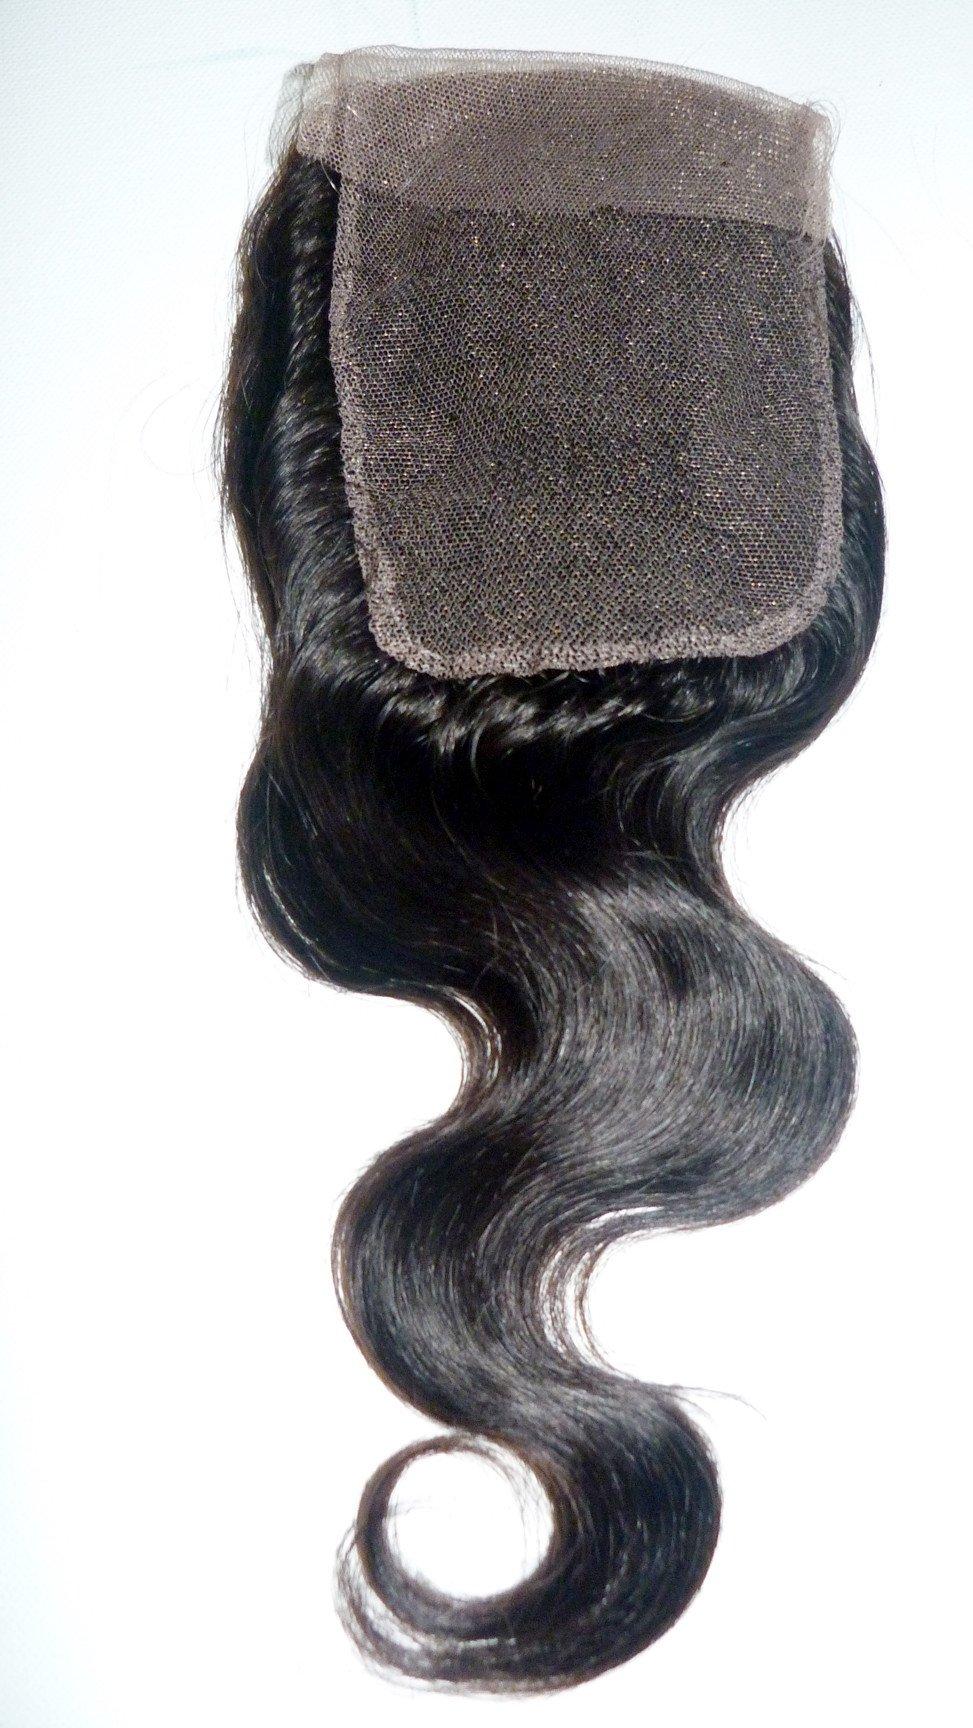 Fermeture supérieure en dentelle indienne vierge Remy – 10,2 x 10,2 cm – Cheveux vierges et beauté, les meilleures extensions de cheveux, vrais cheveux humains vierges.